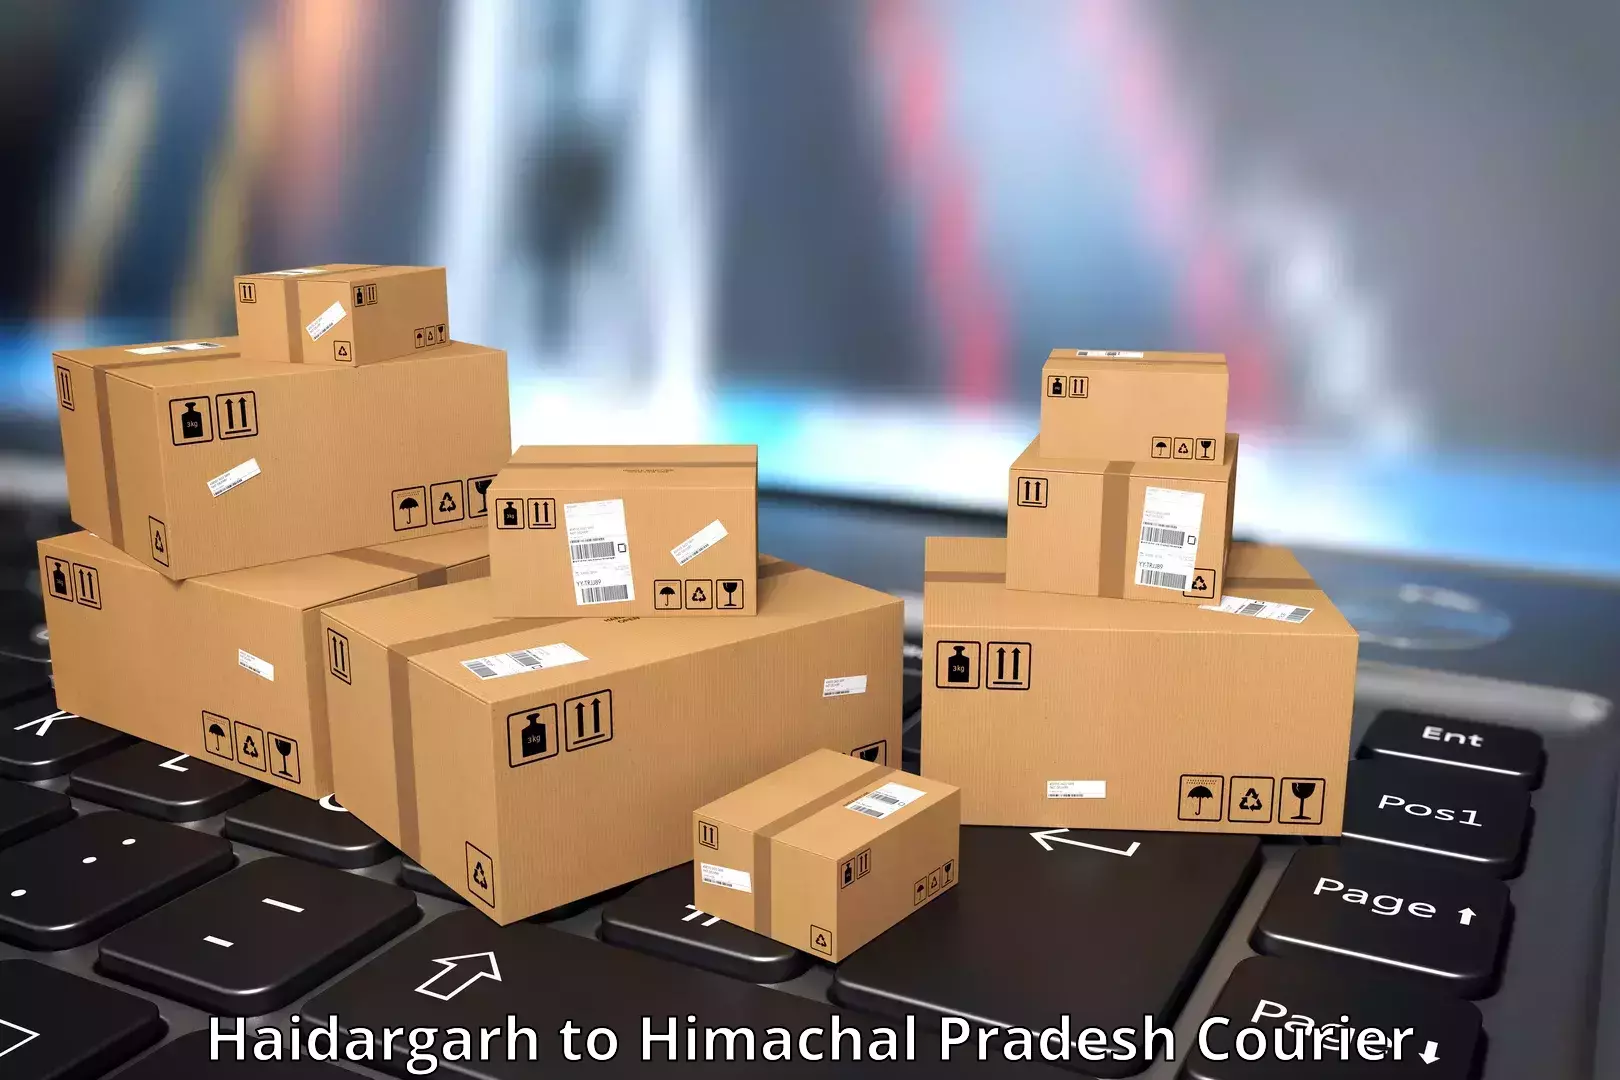 Speedy delivery service Haidargarh to Surajpur Jhikla